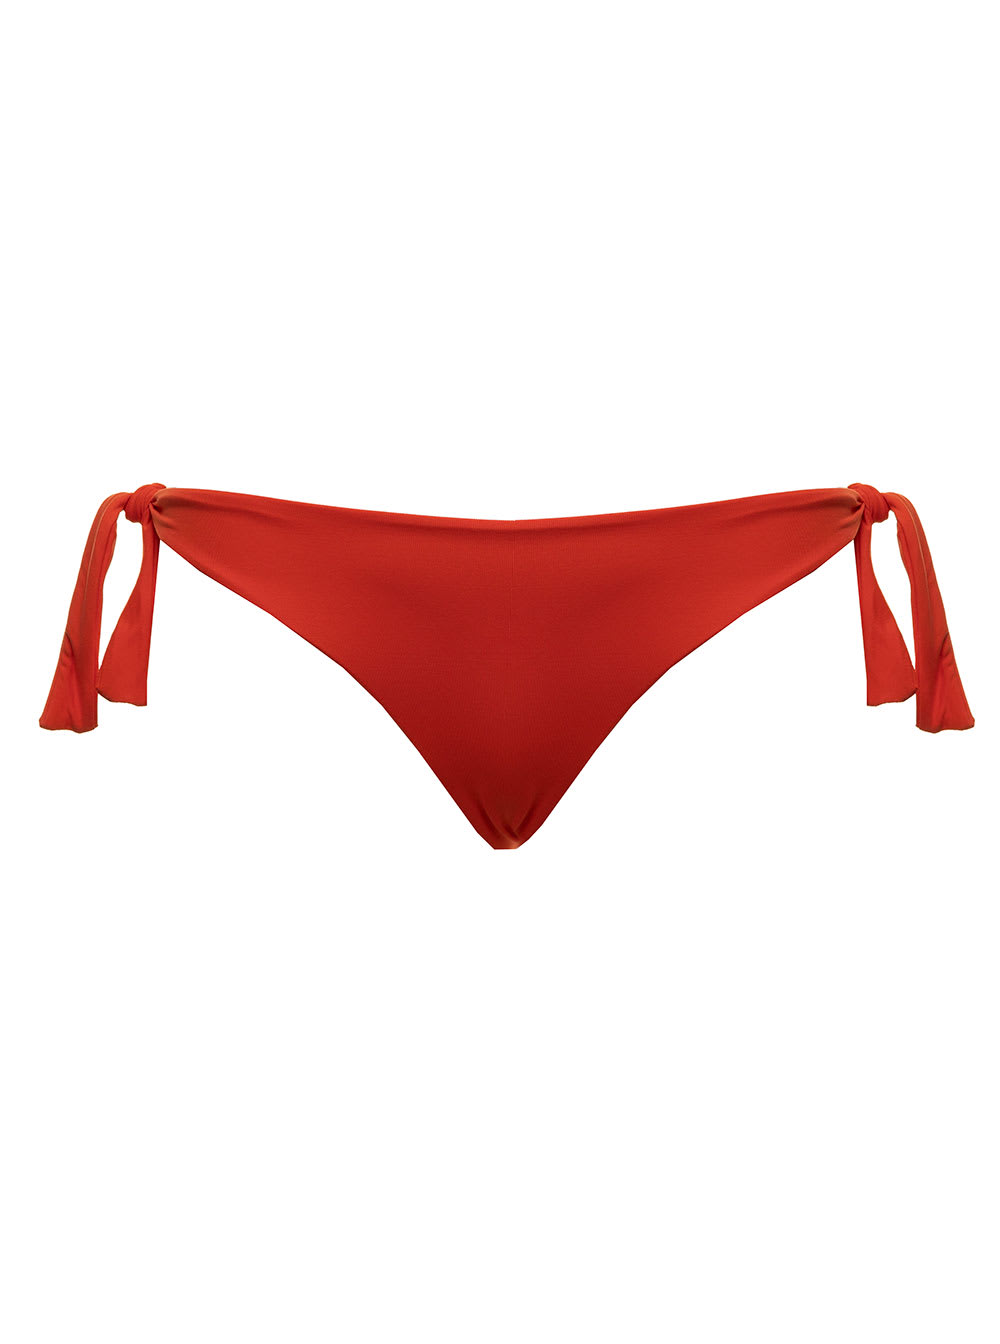 Fisico - Cristina Ferrari Fisico Womans Orange Stretch Fabric Bikini Briefs